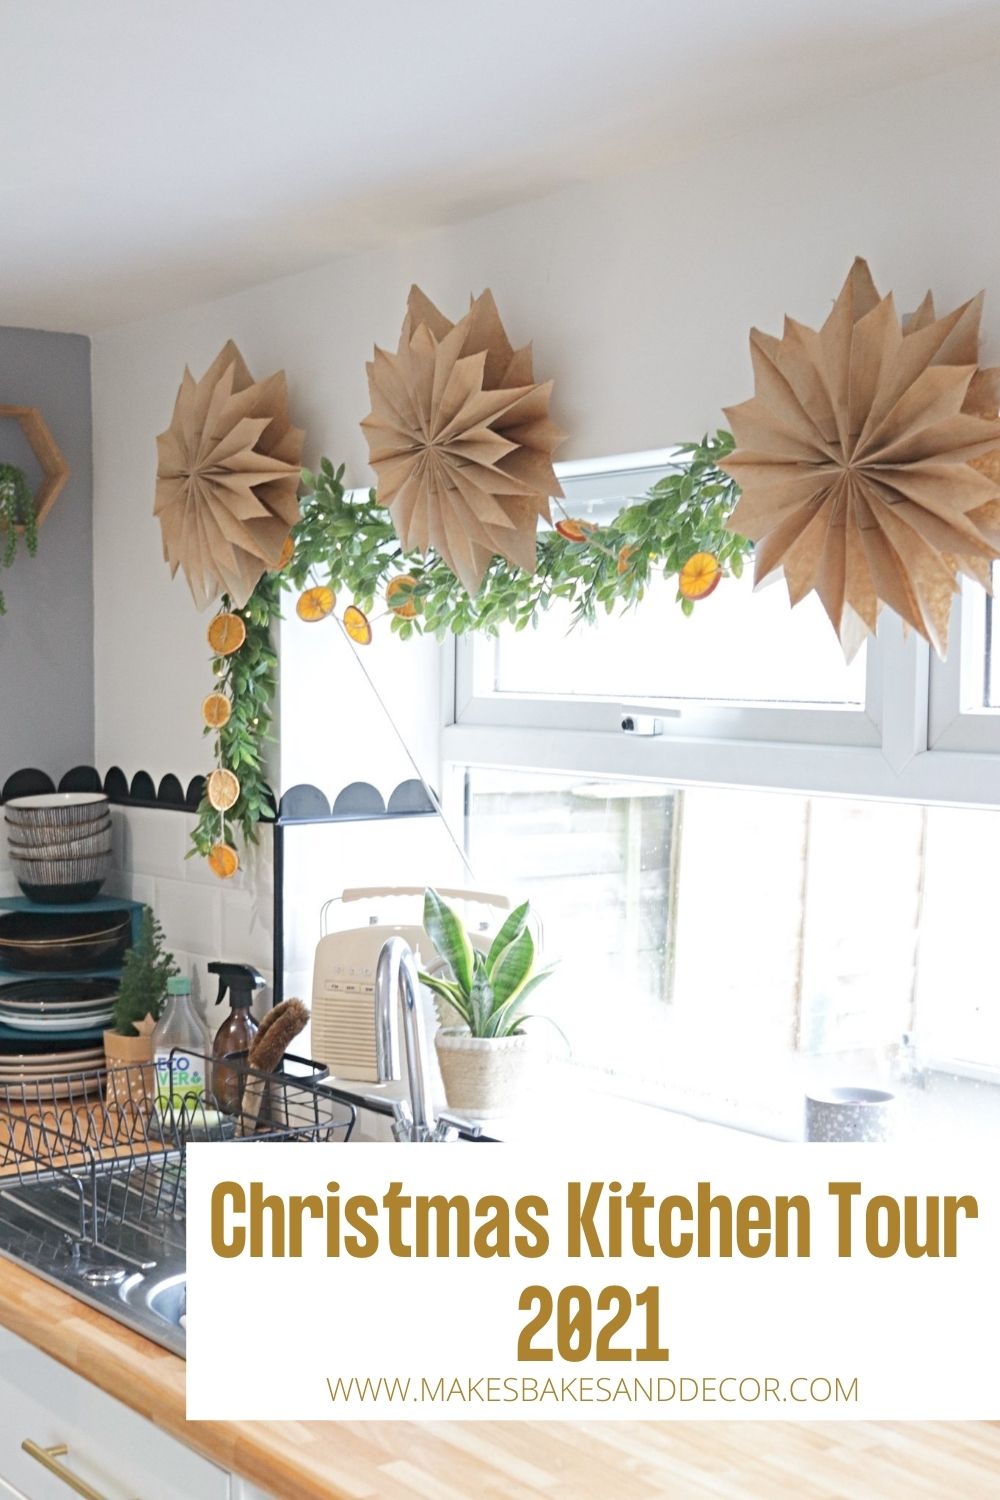 Christmas kitchen tour 2021 pin